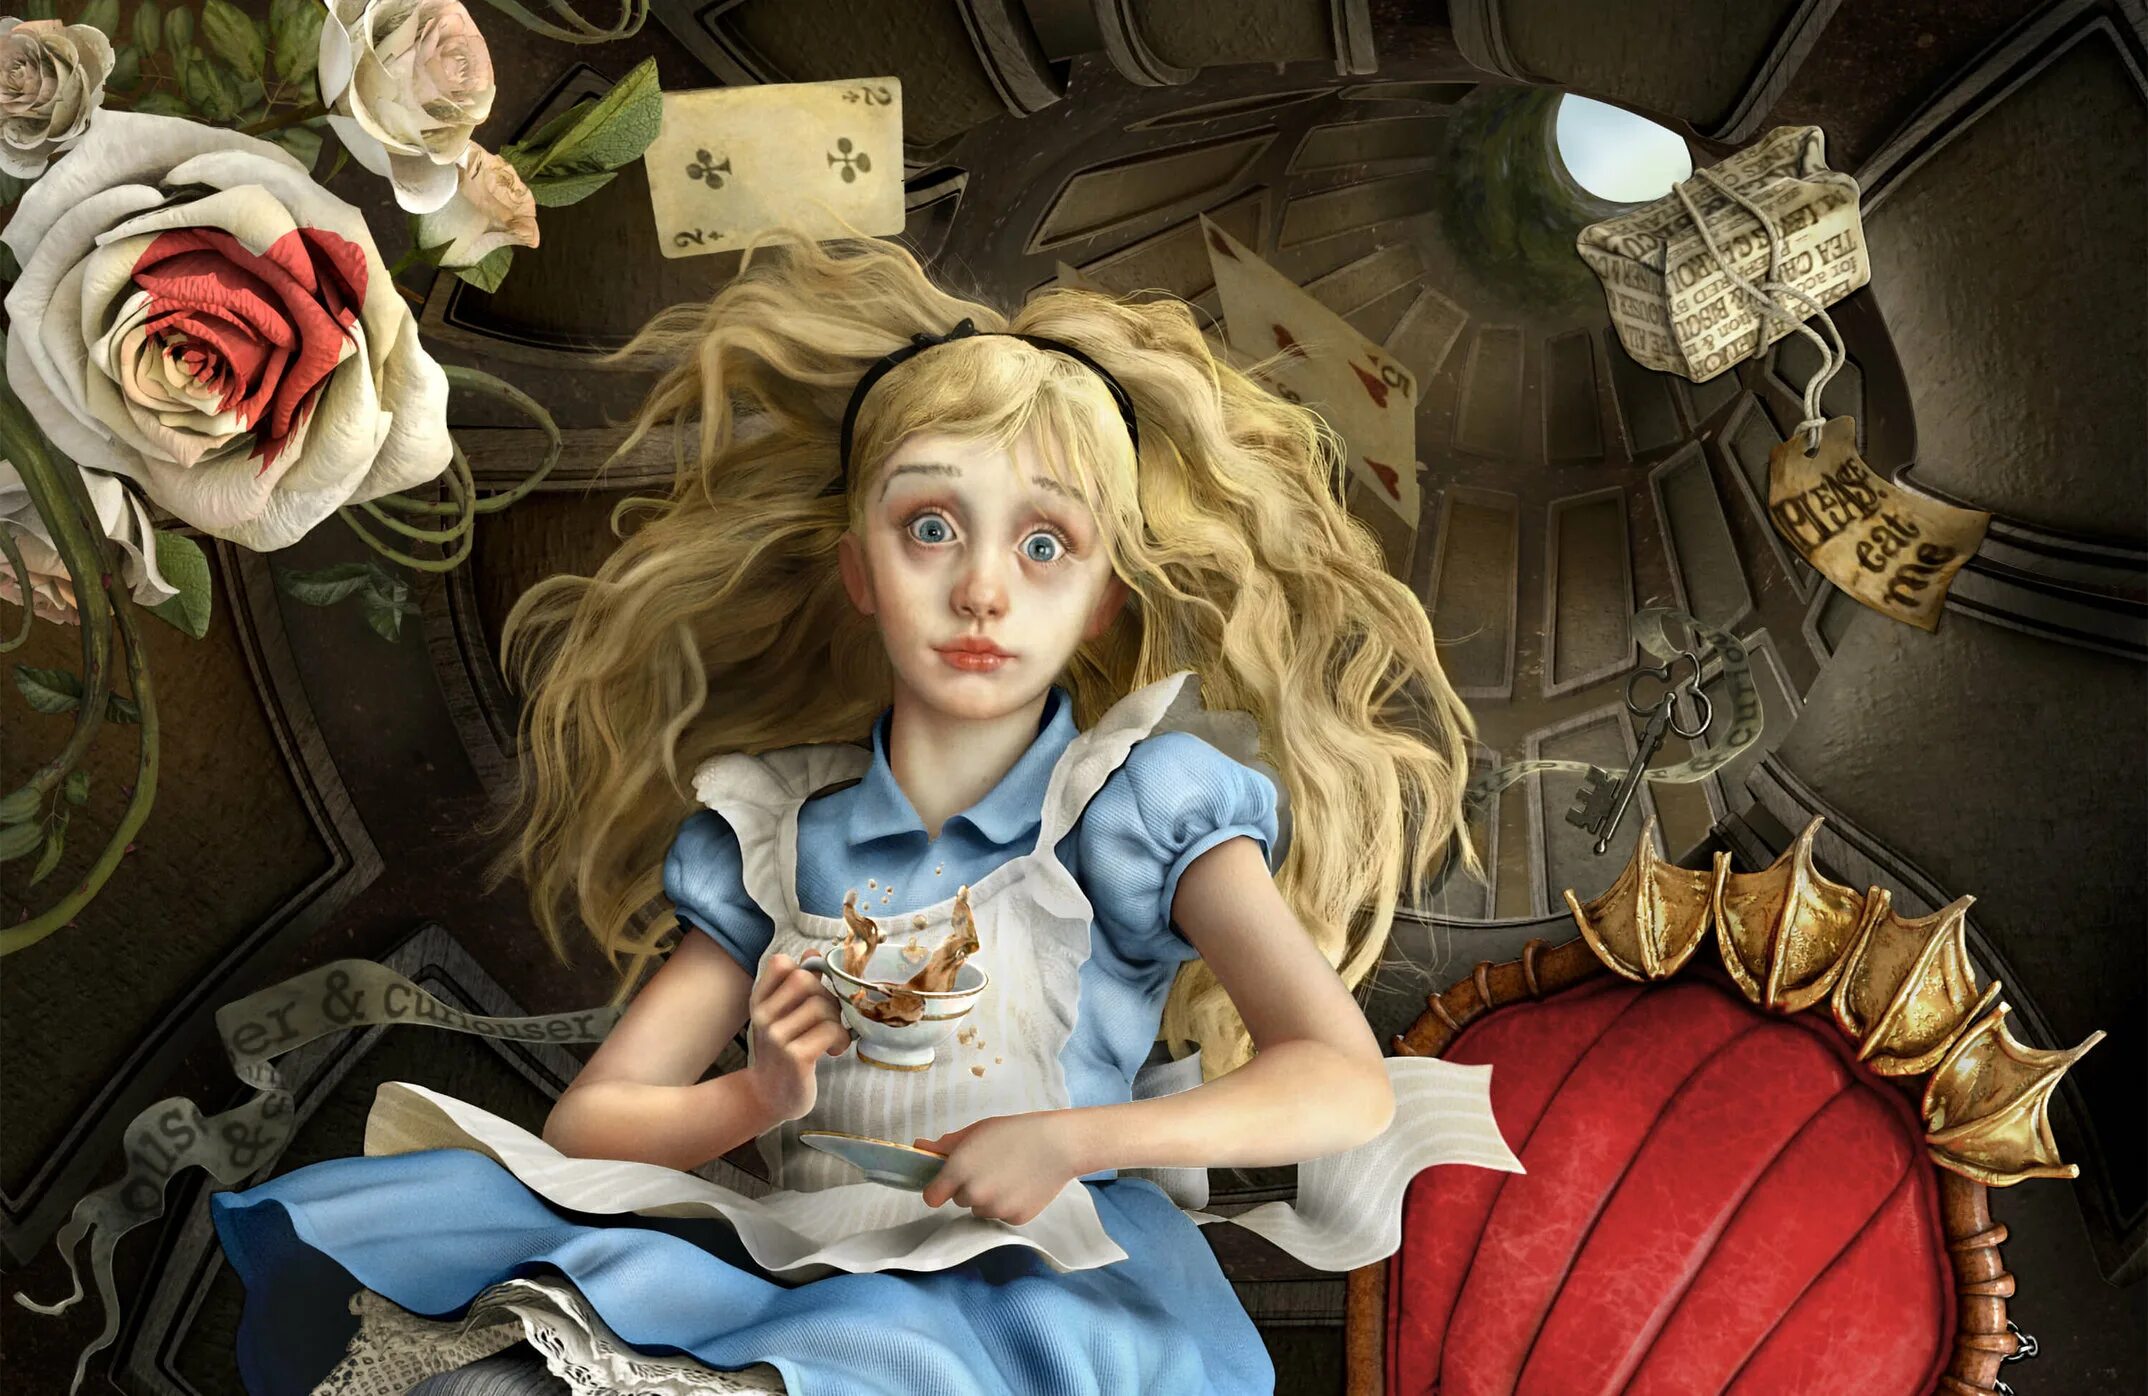 Мир страны чудес. Алиса (персонаж Кэрролла). Алиса из страны чудес +18. Алиса Вандерленд. Алиса в стране чудес 1 часть.